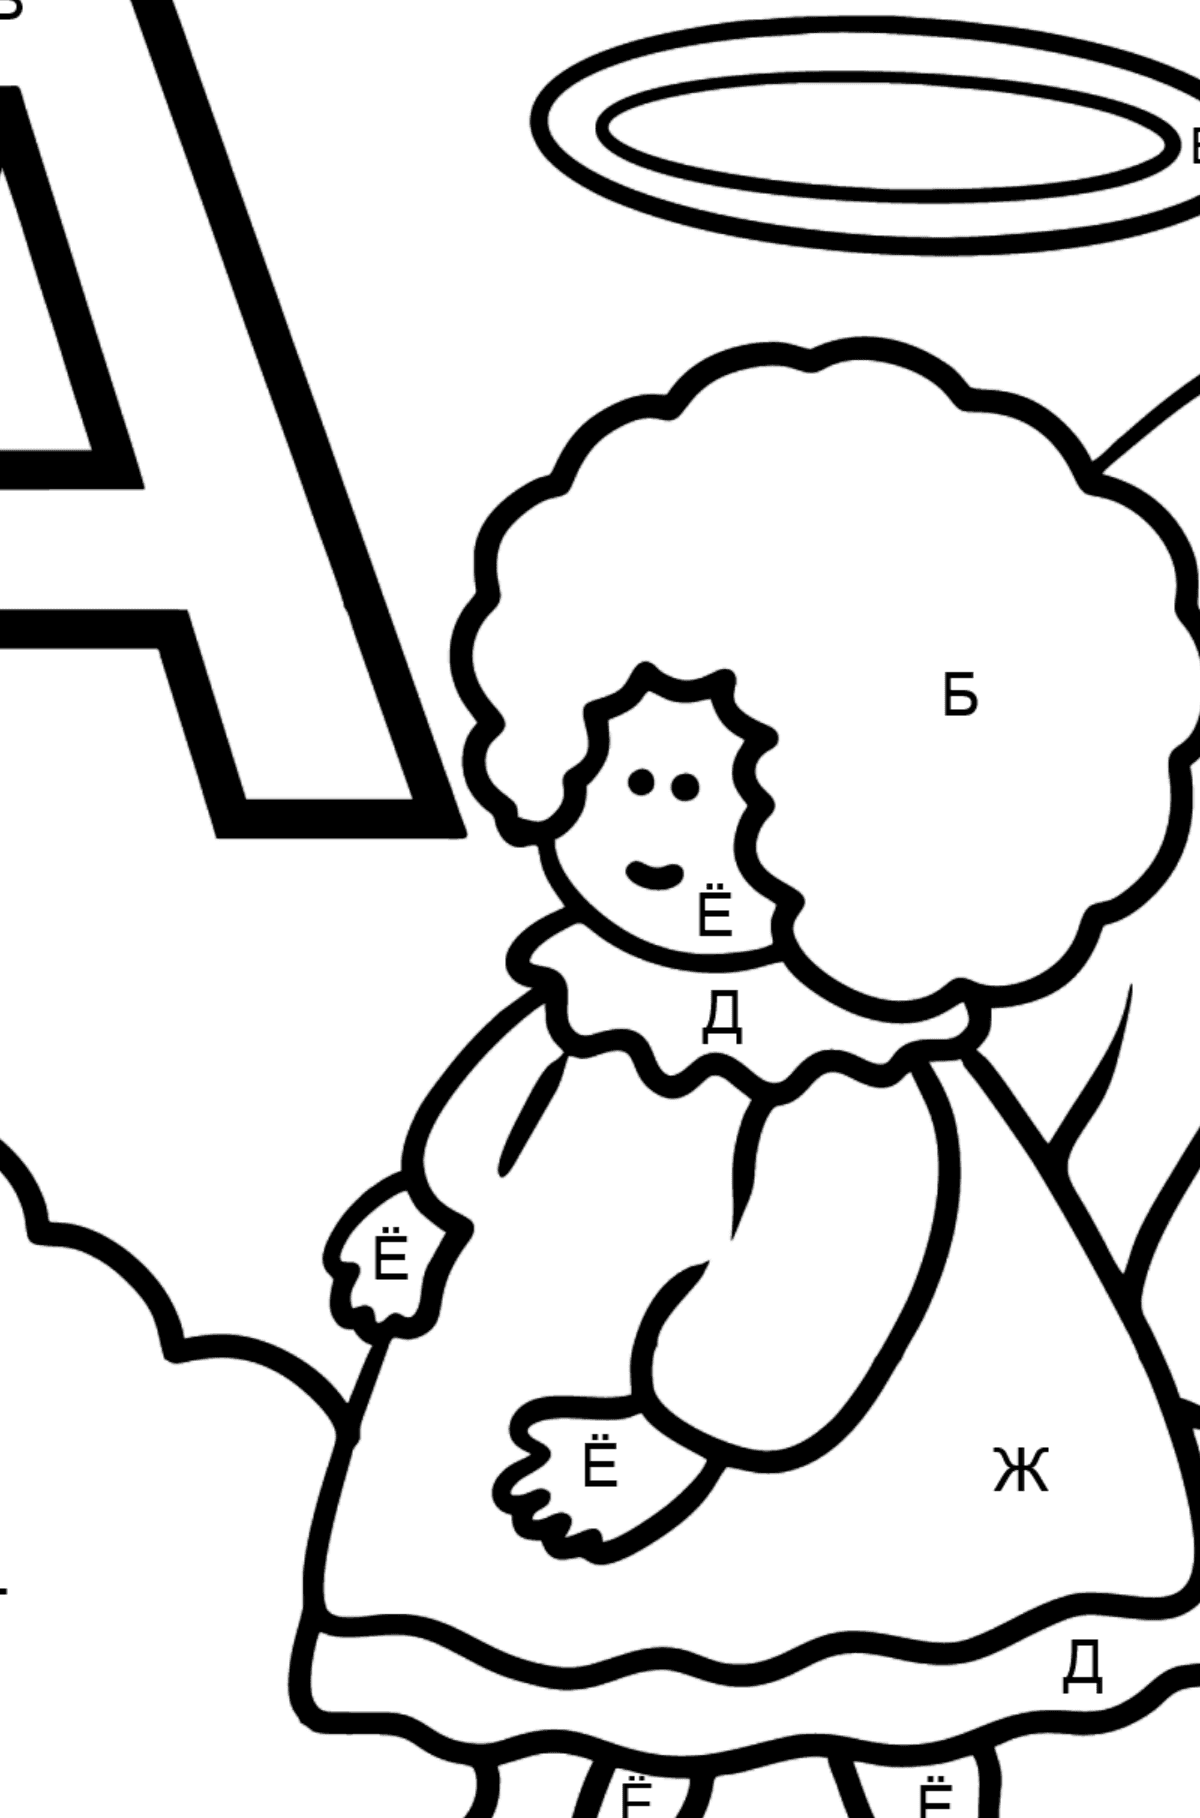 Раскраска Буква A испанского алфавита - ÁNGEL - По Буквам для Детей